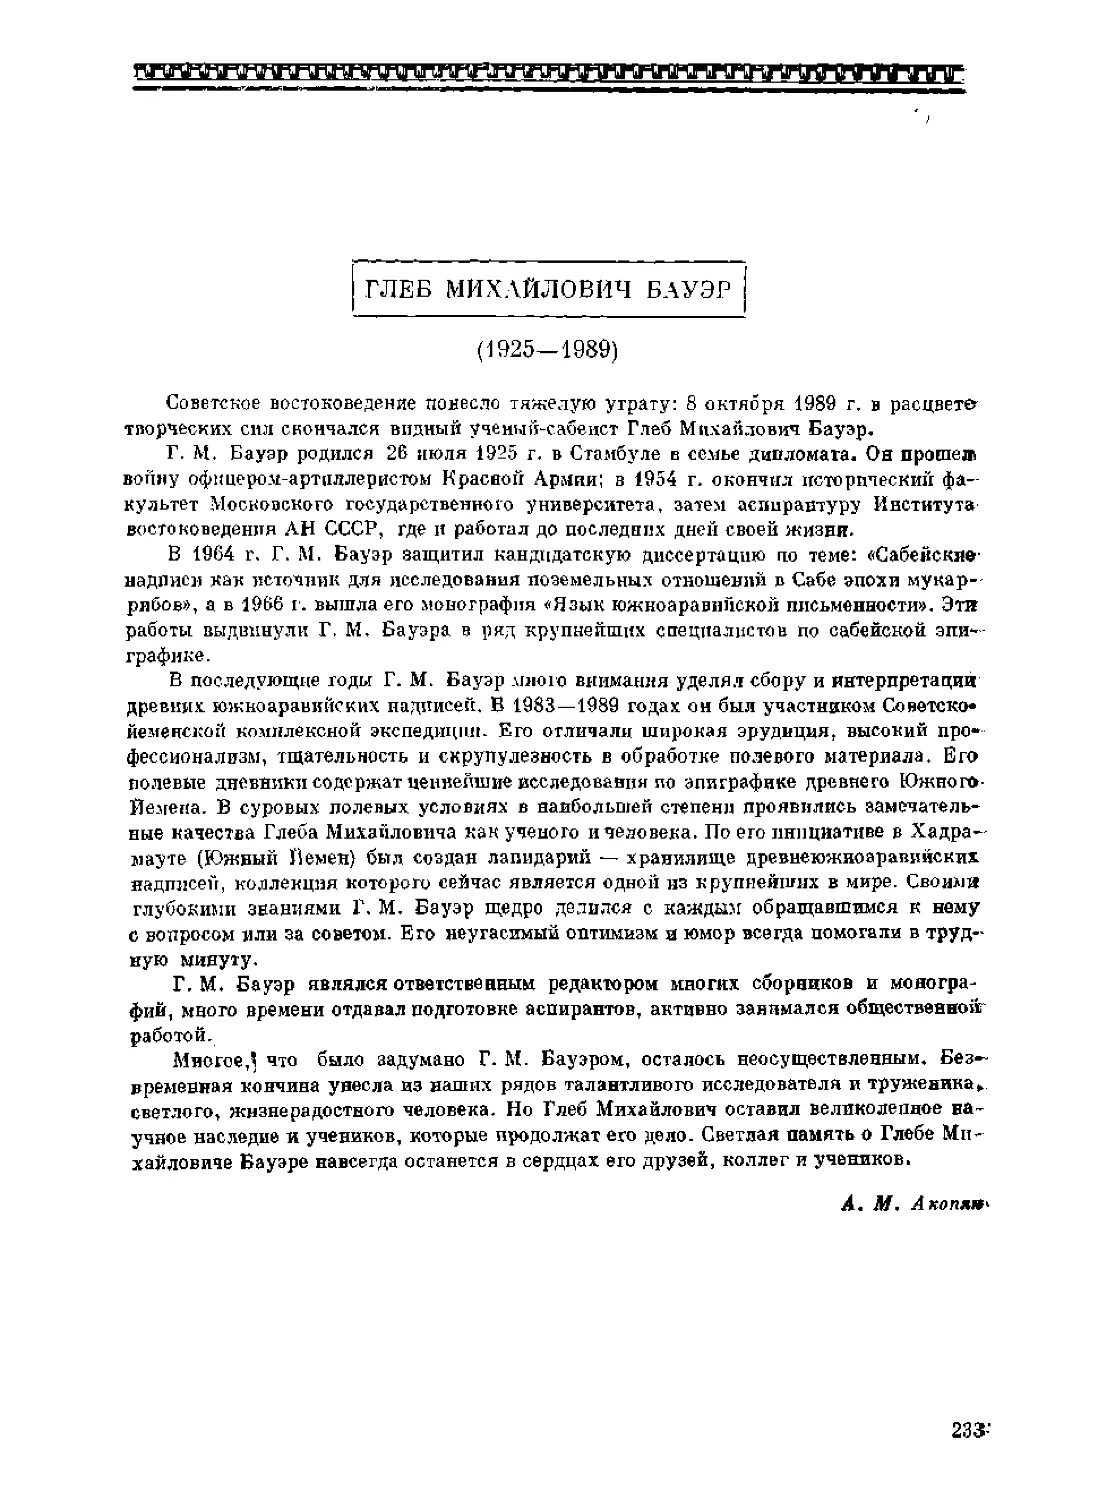 ﻿Глеб Михайлович Бауэр ø1925-1989ù. А. М. Акопя